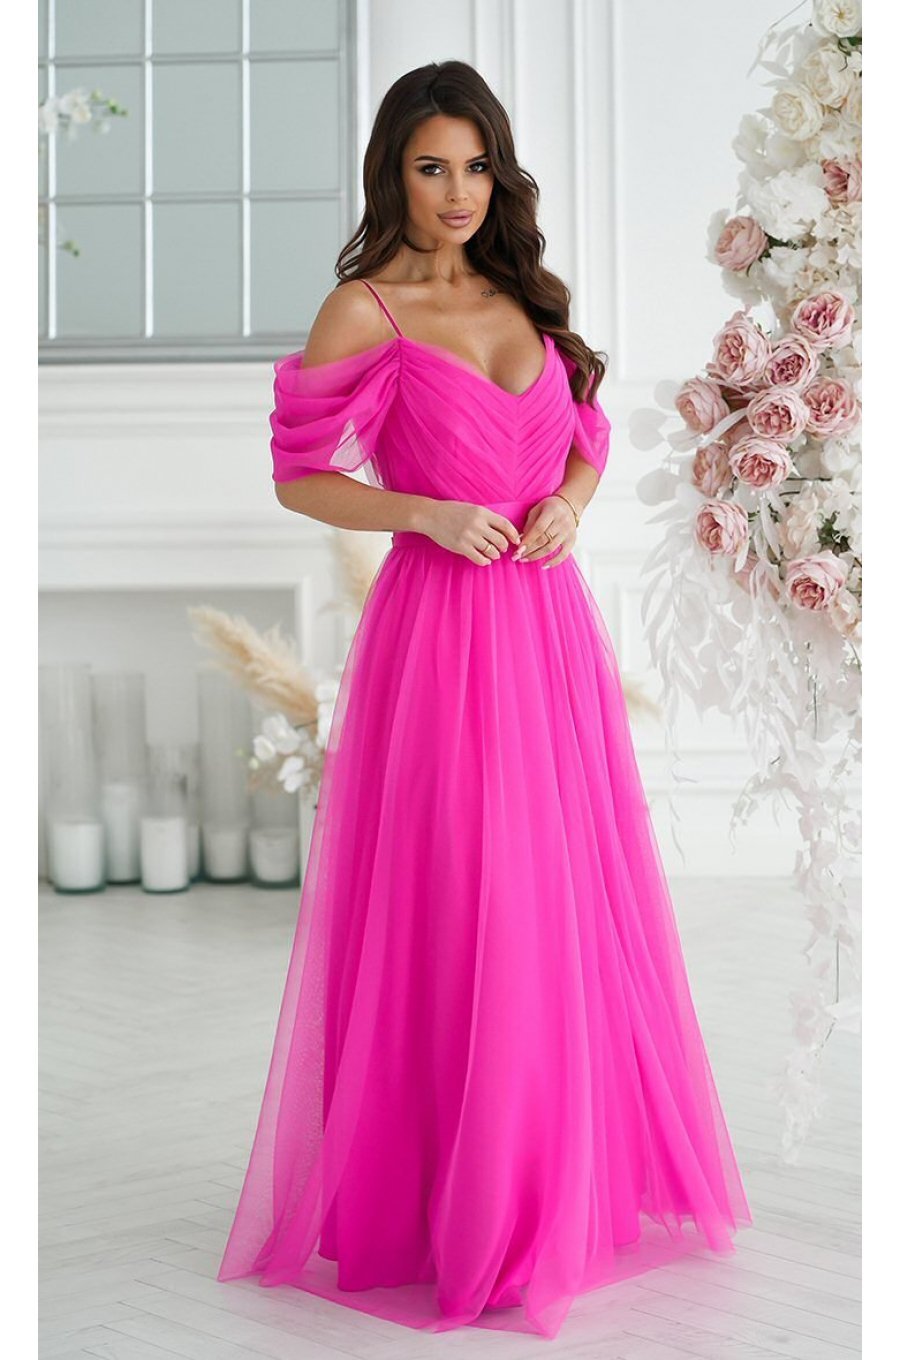 Rochie eleganta lunga, din tulle, roz fucsia, vaporoasa, cu umerii goi, FloraY 5 - jojofashion.ro